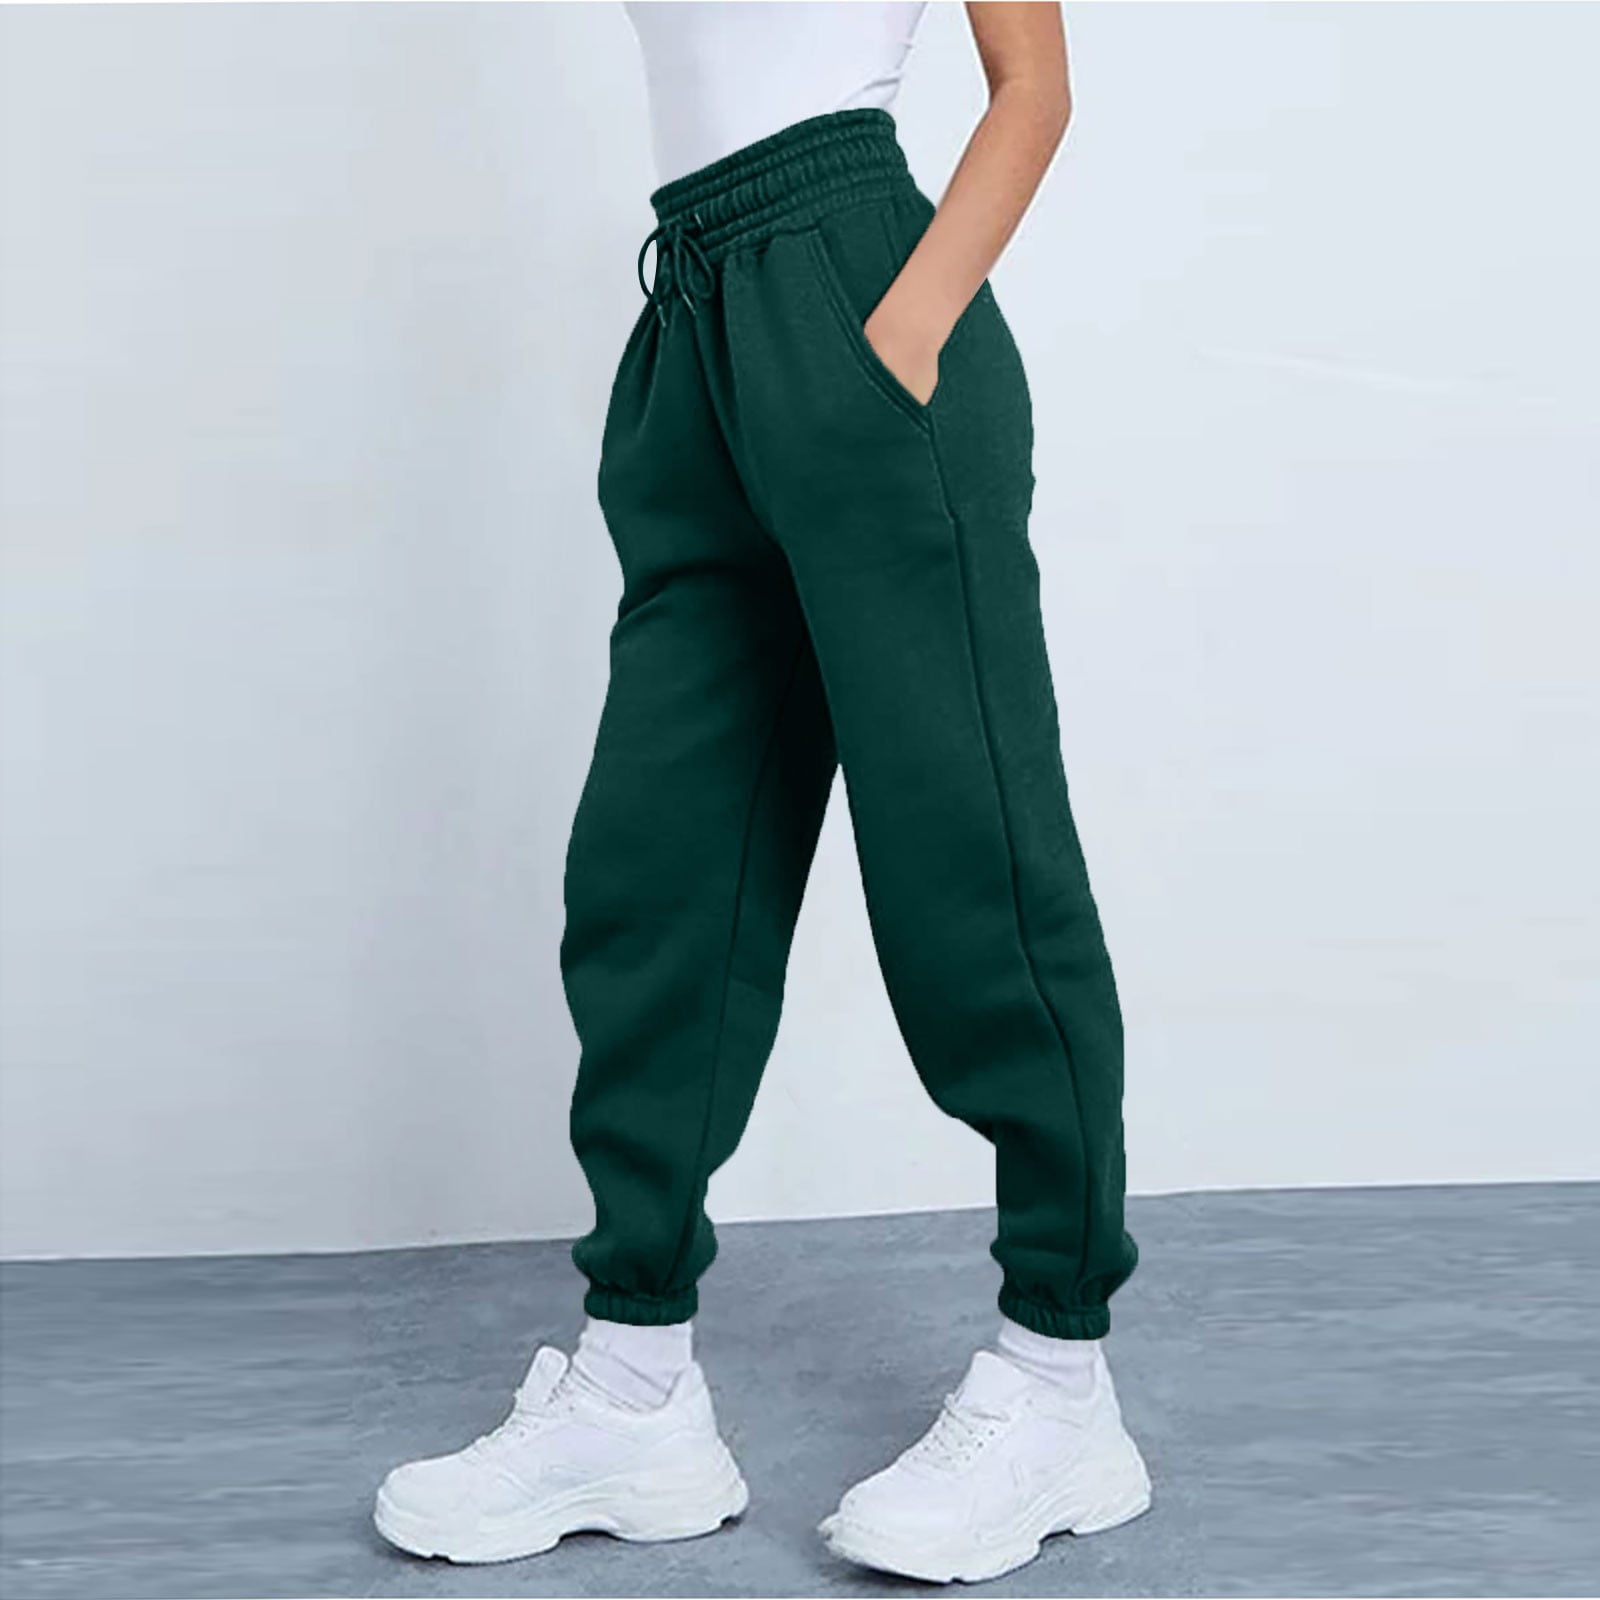 Susanny Petite Sweatpants for Women Elastic Ankle Cinch Bottom